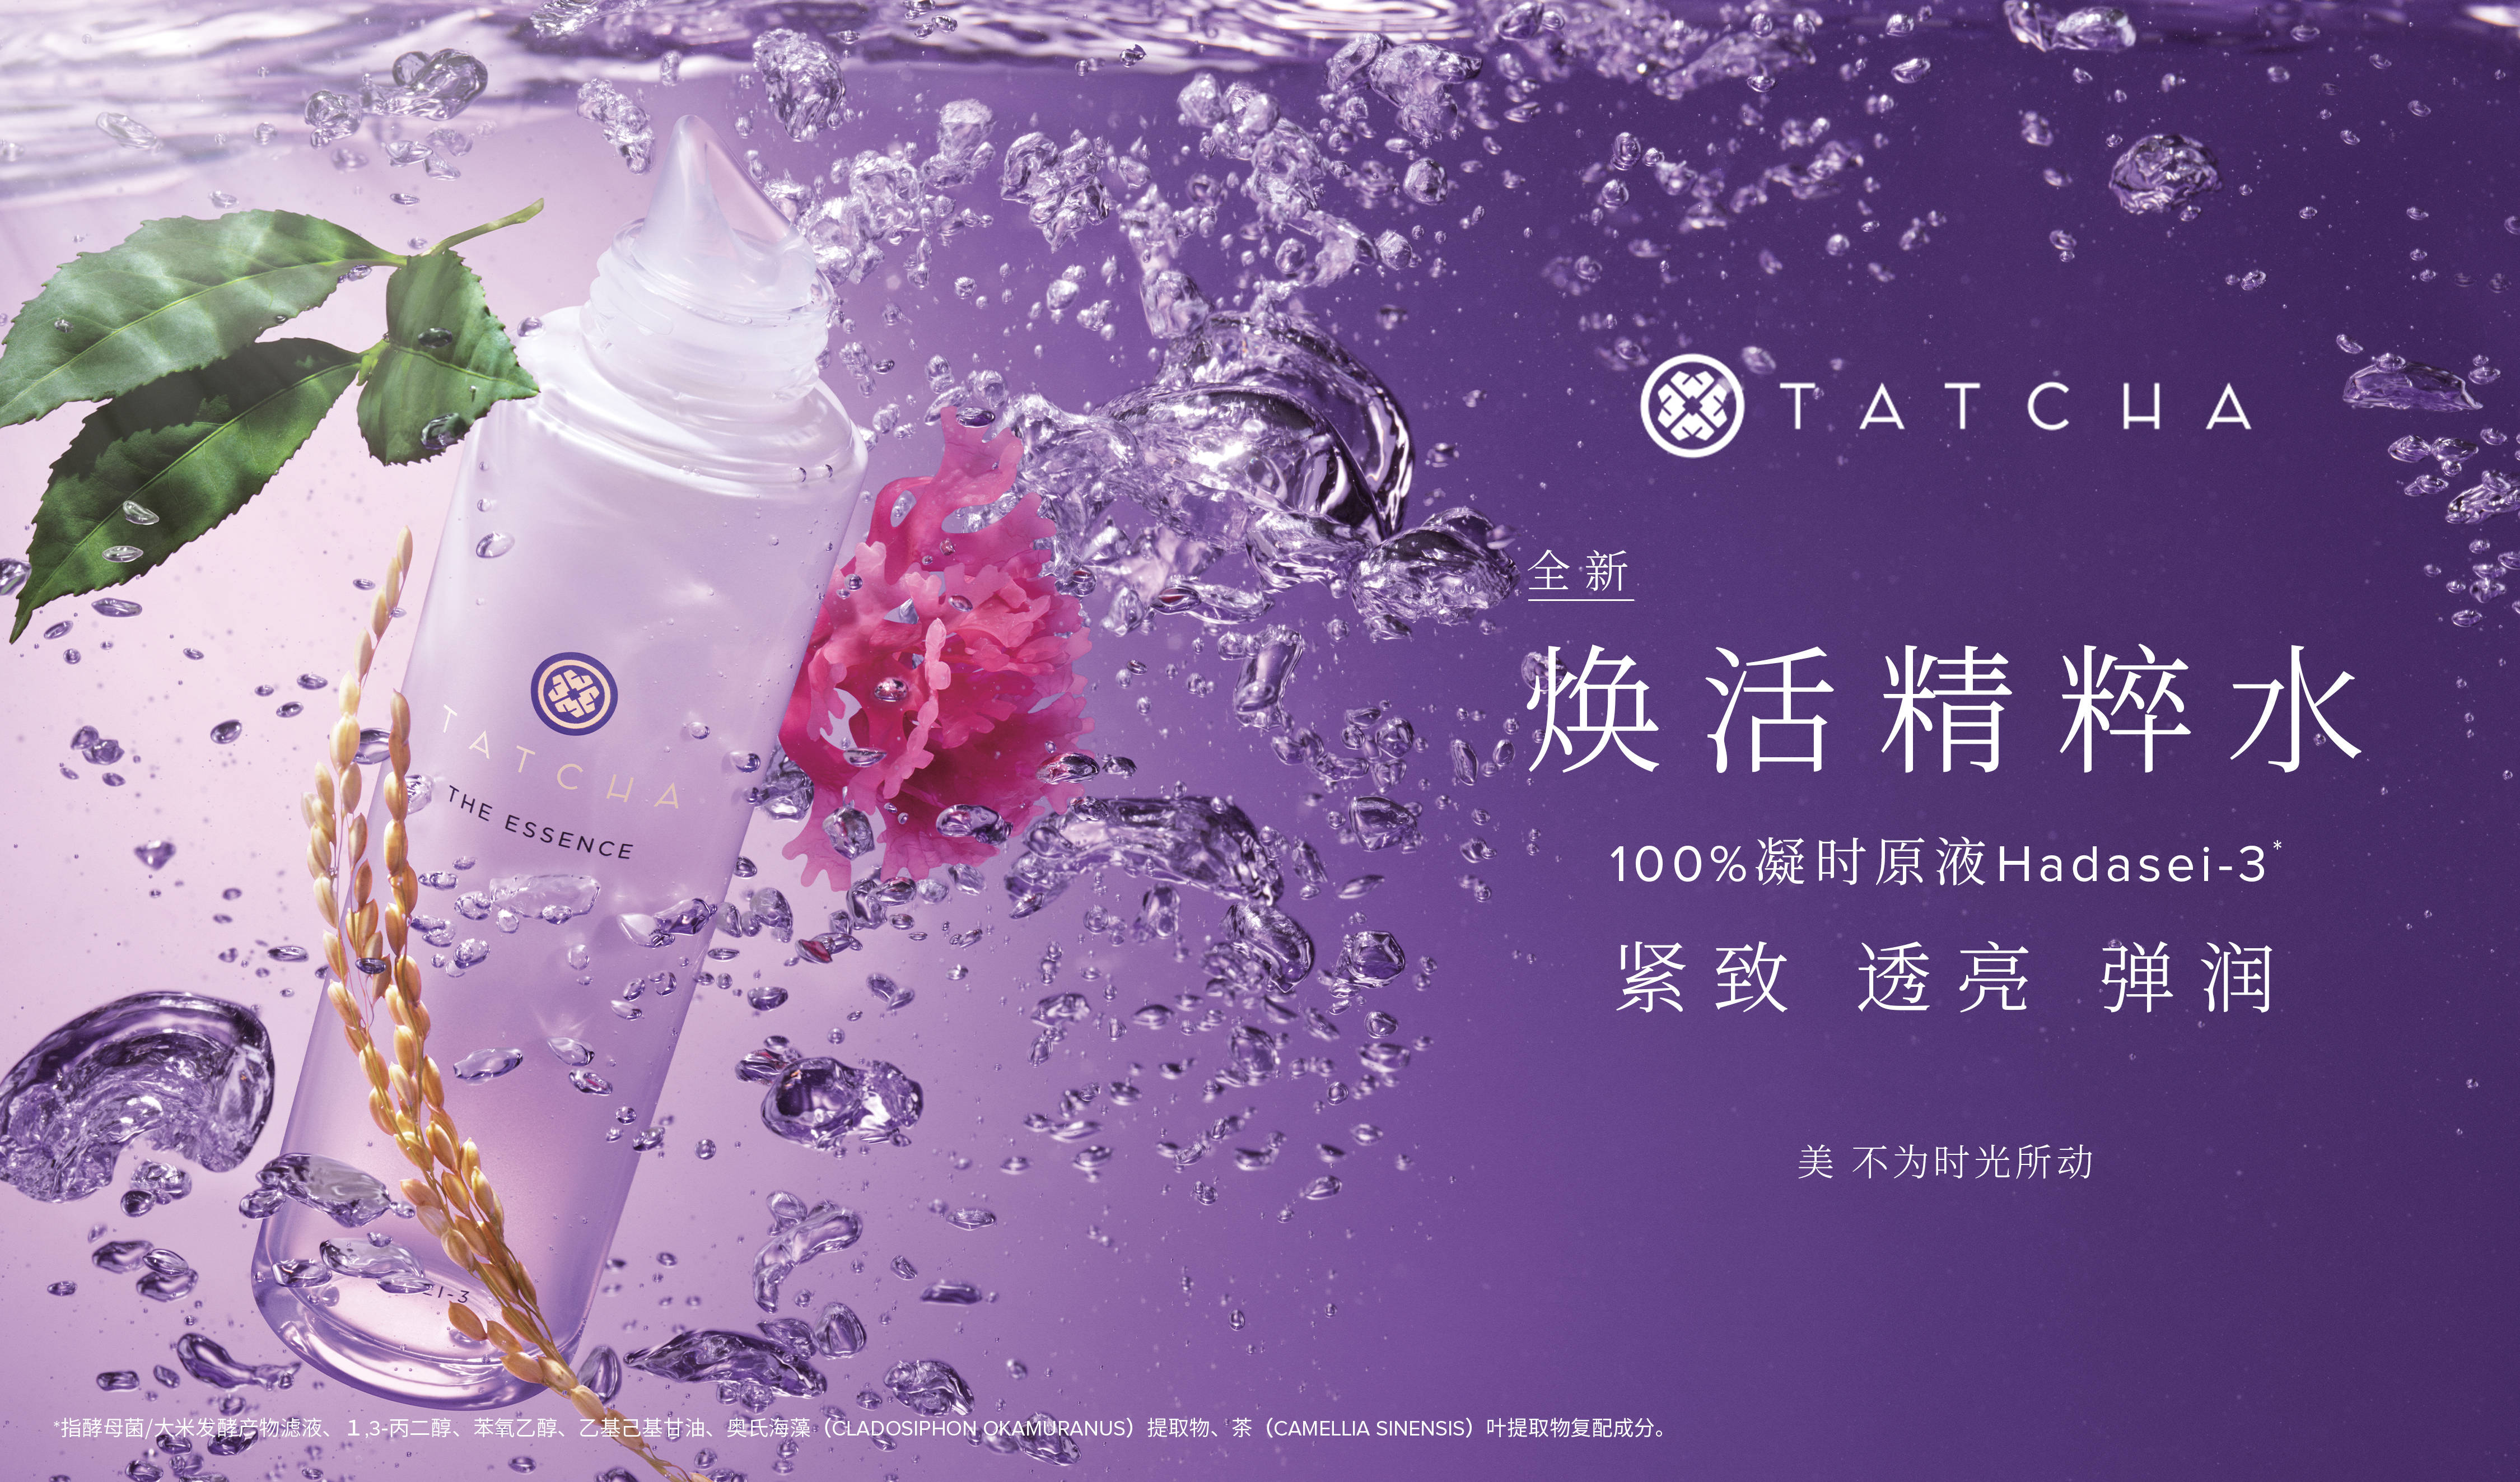 匠心纯净奢美护肤品牌TATCHA正式进驻中国市场图片2